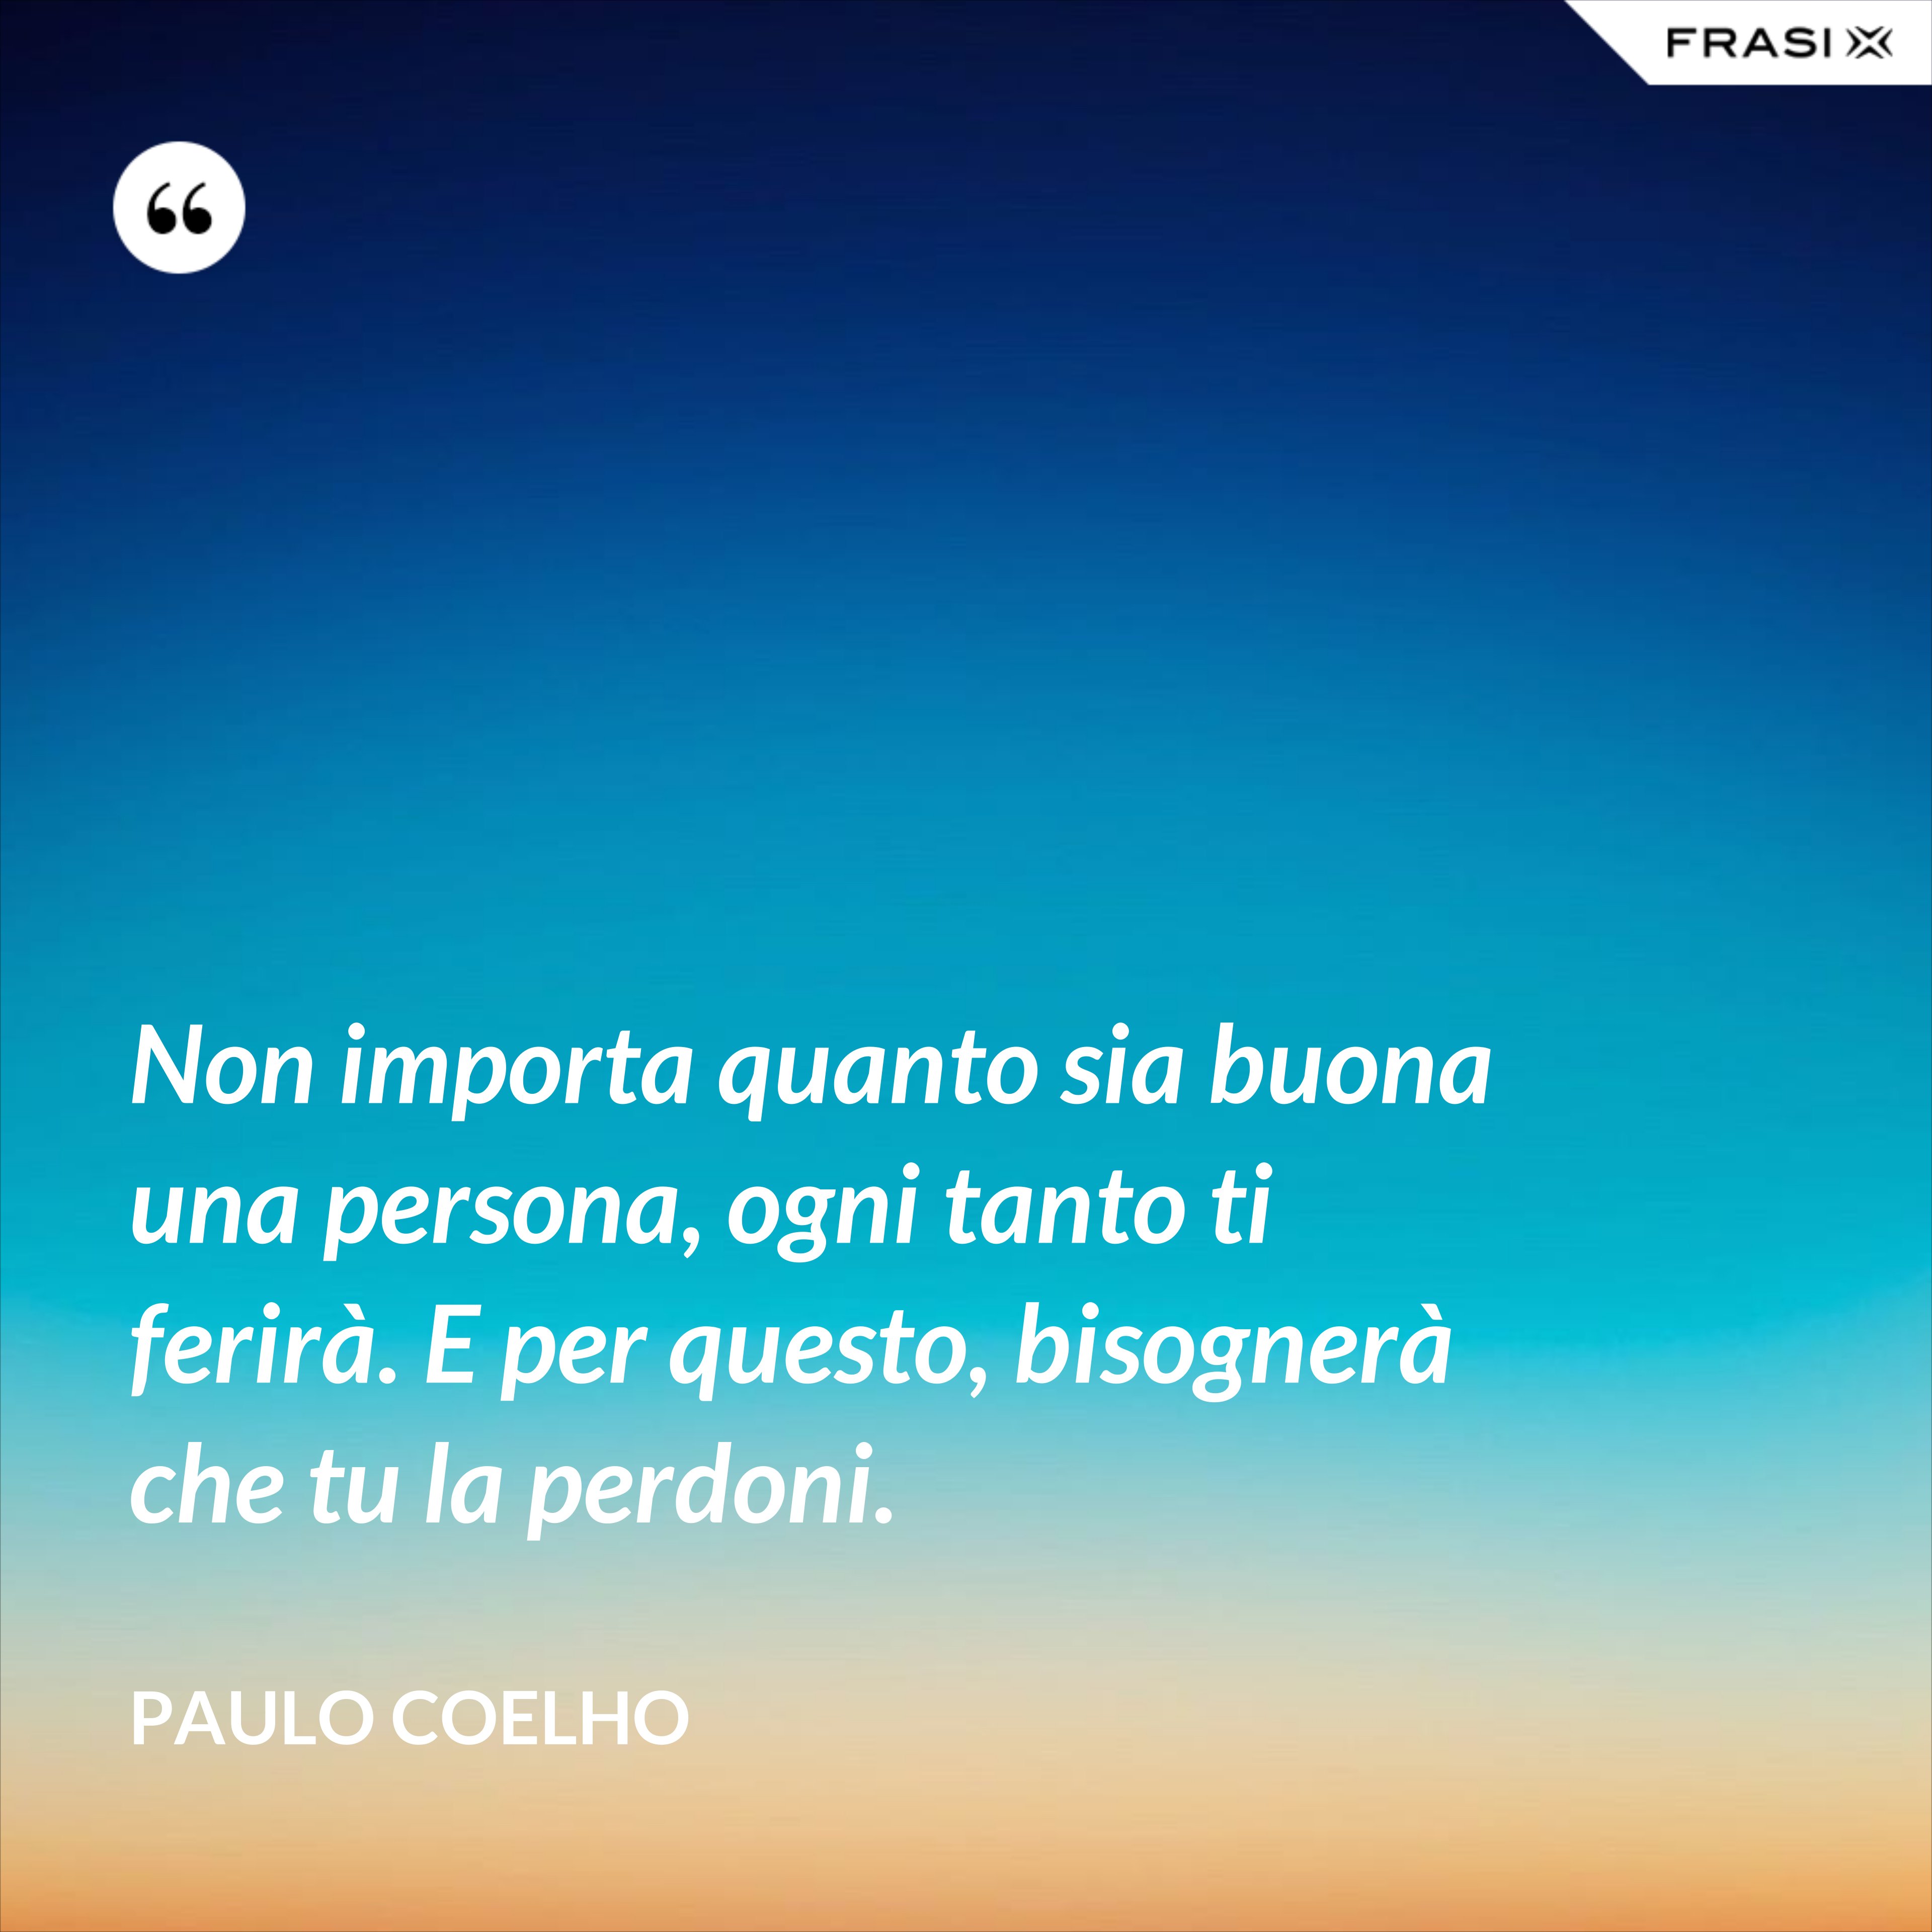 Non importa quanto sia buona una persona, ogni tanto ti ferirà. E per questo, bisognerà che tu la perdoni. - Paulo Coelho